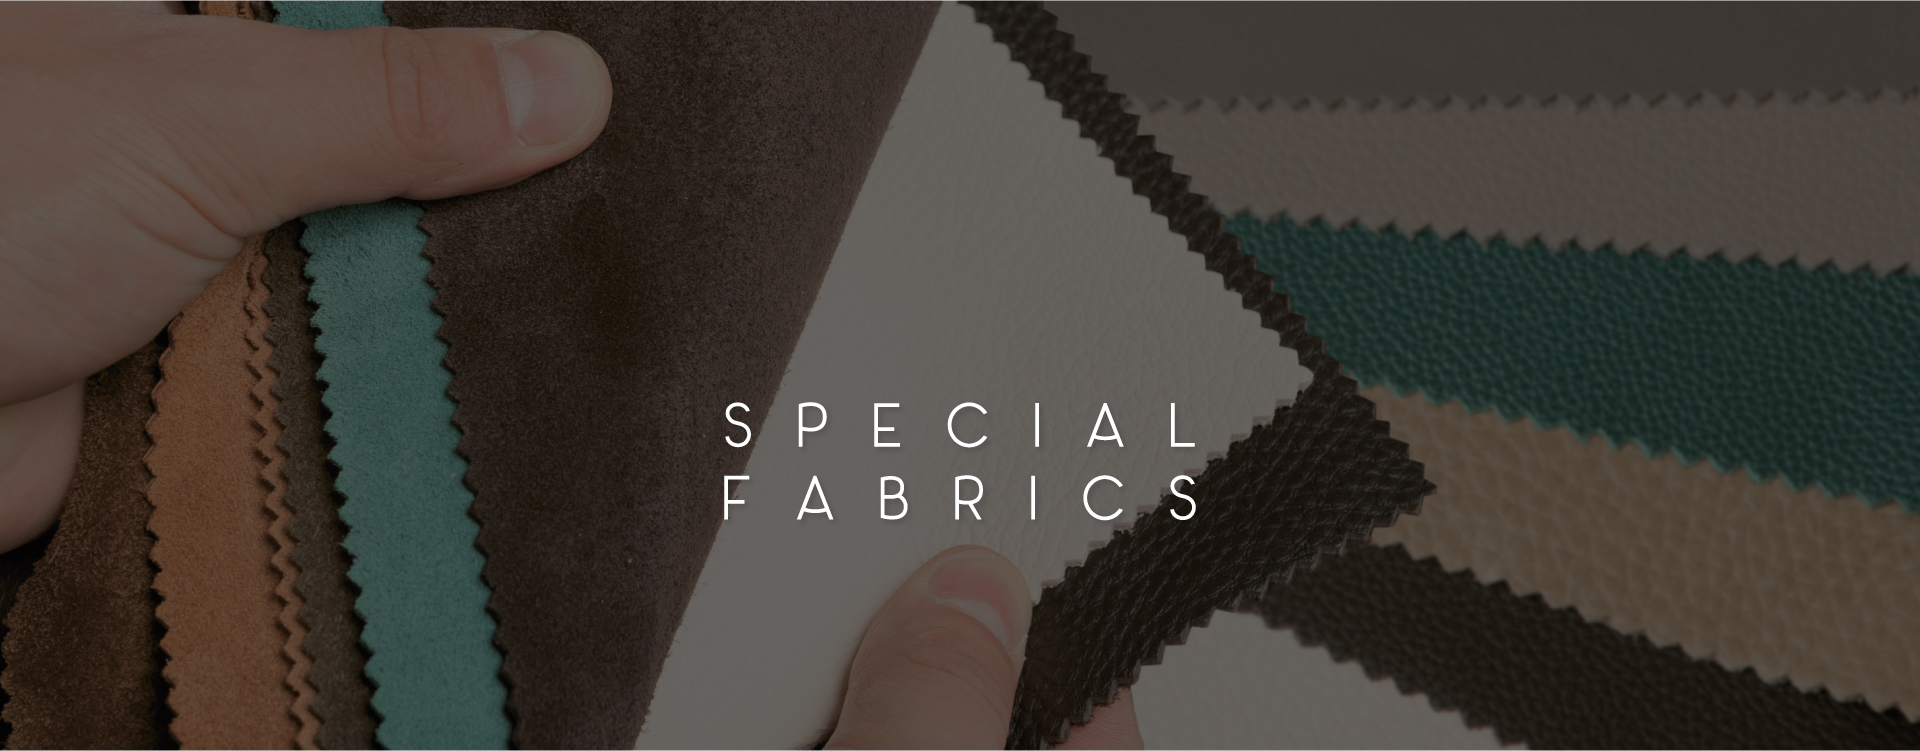 special fabrics